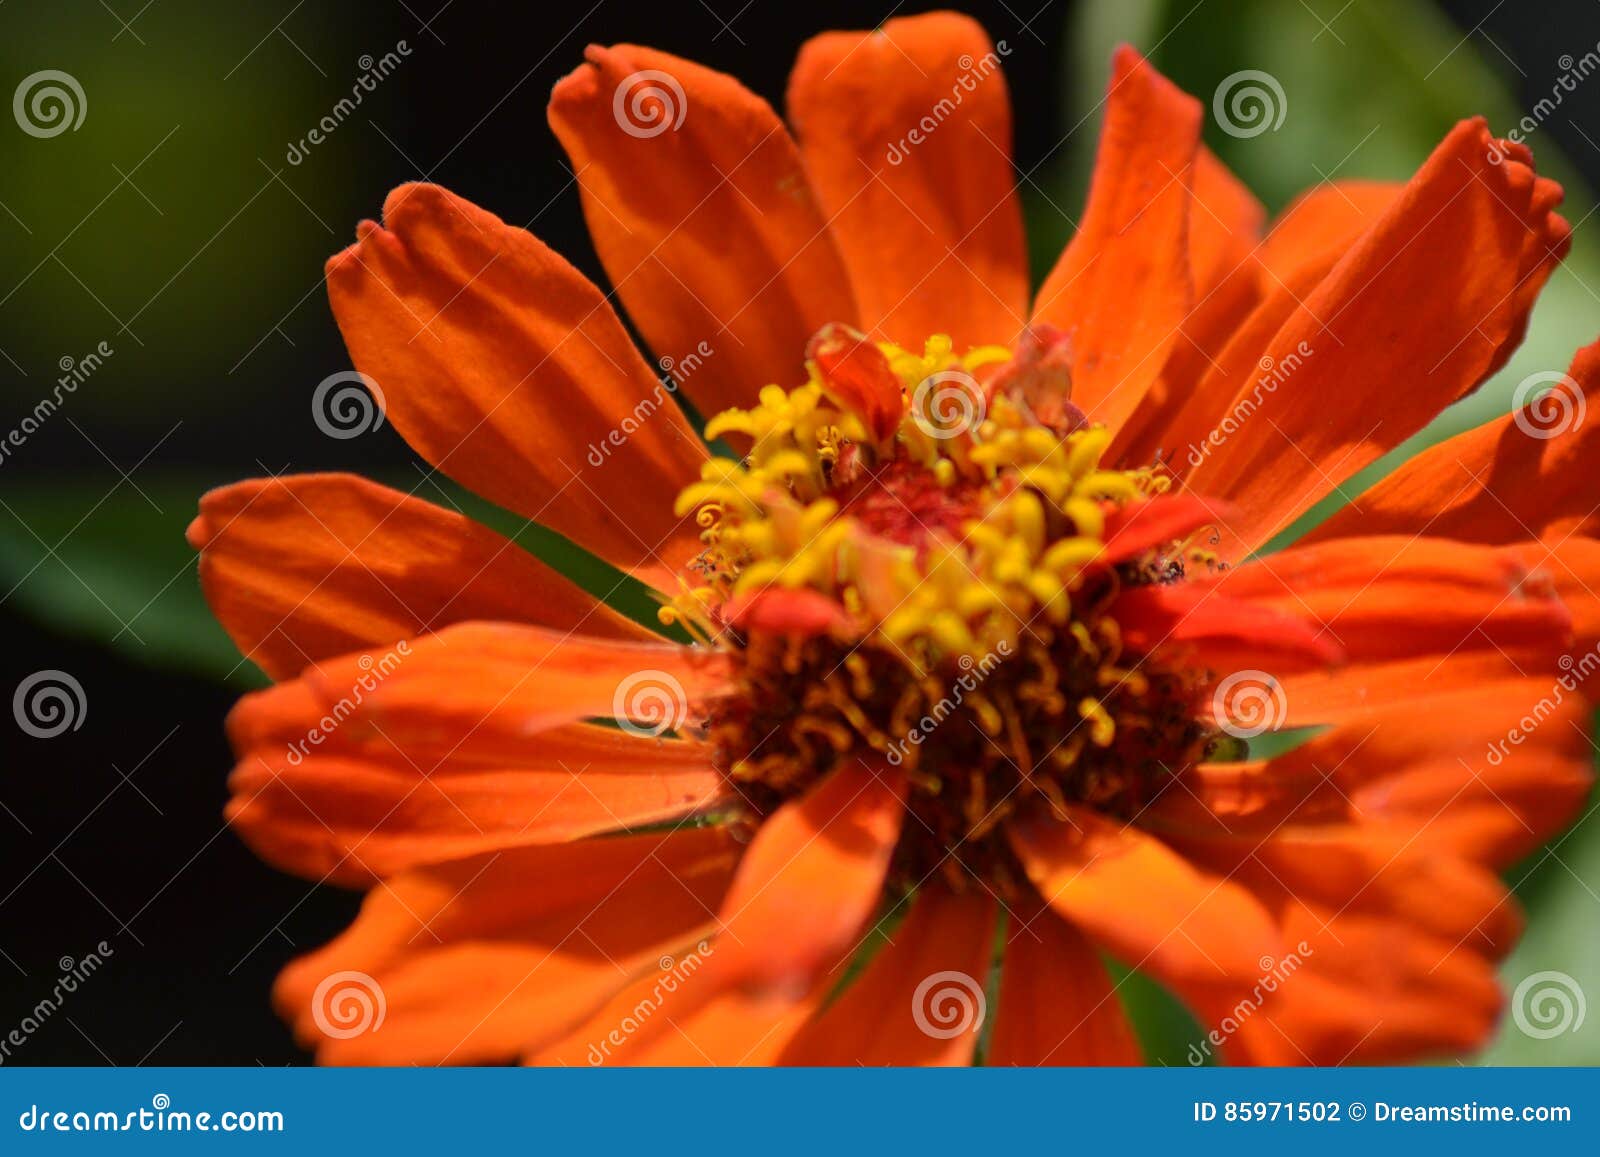 zinnia, fiore arancione